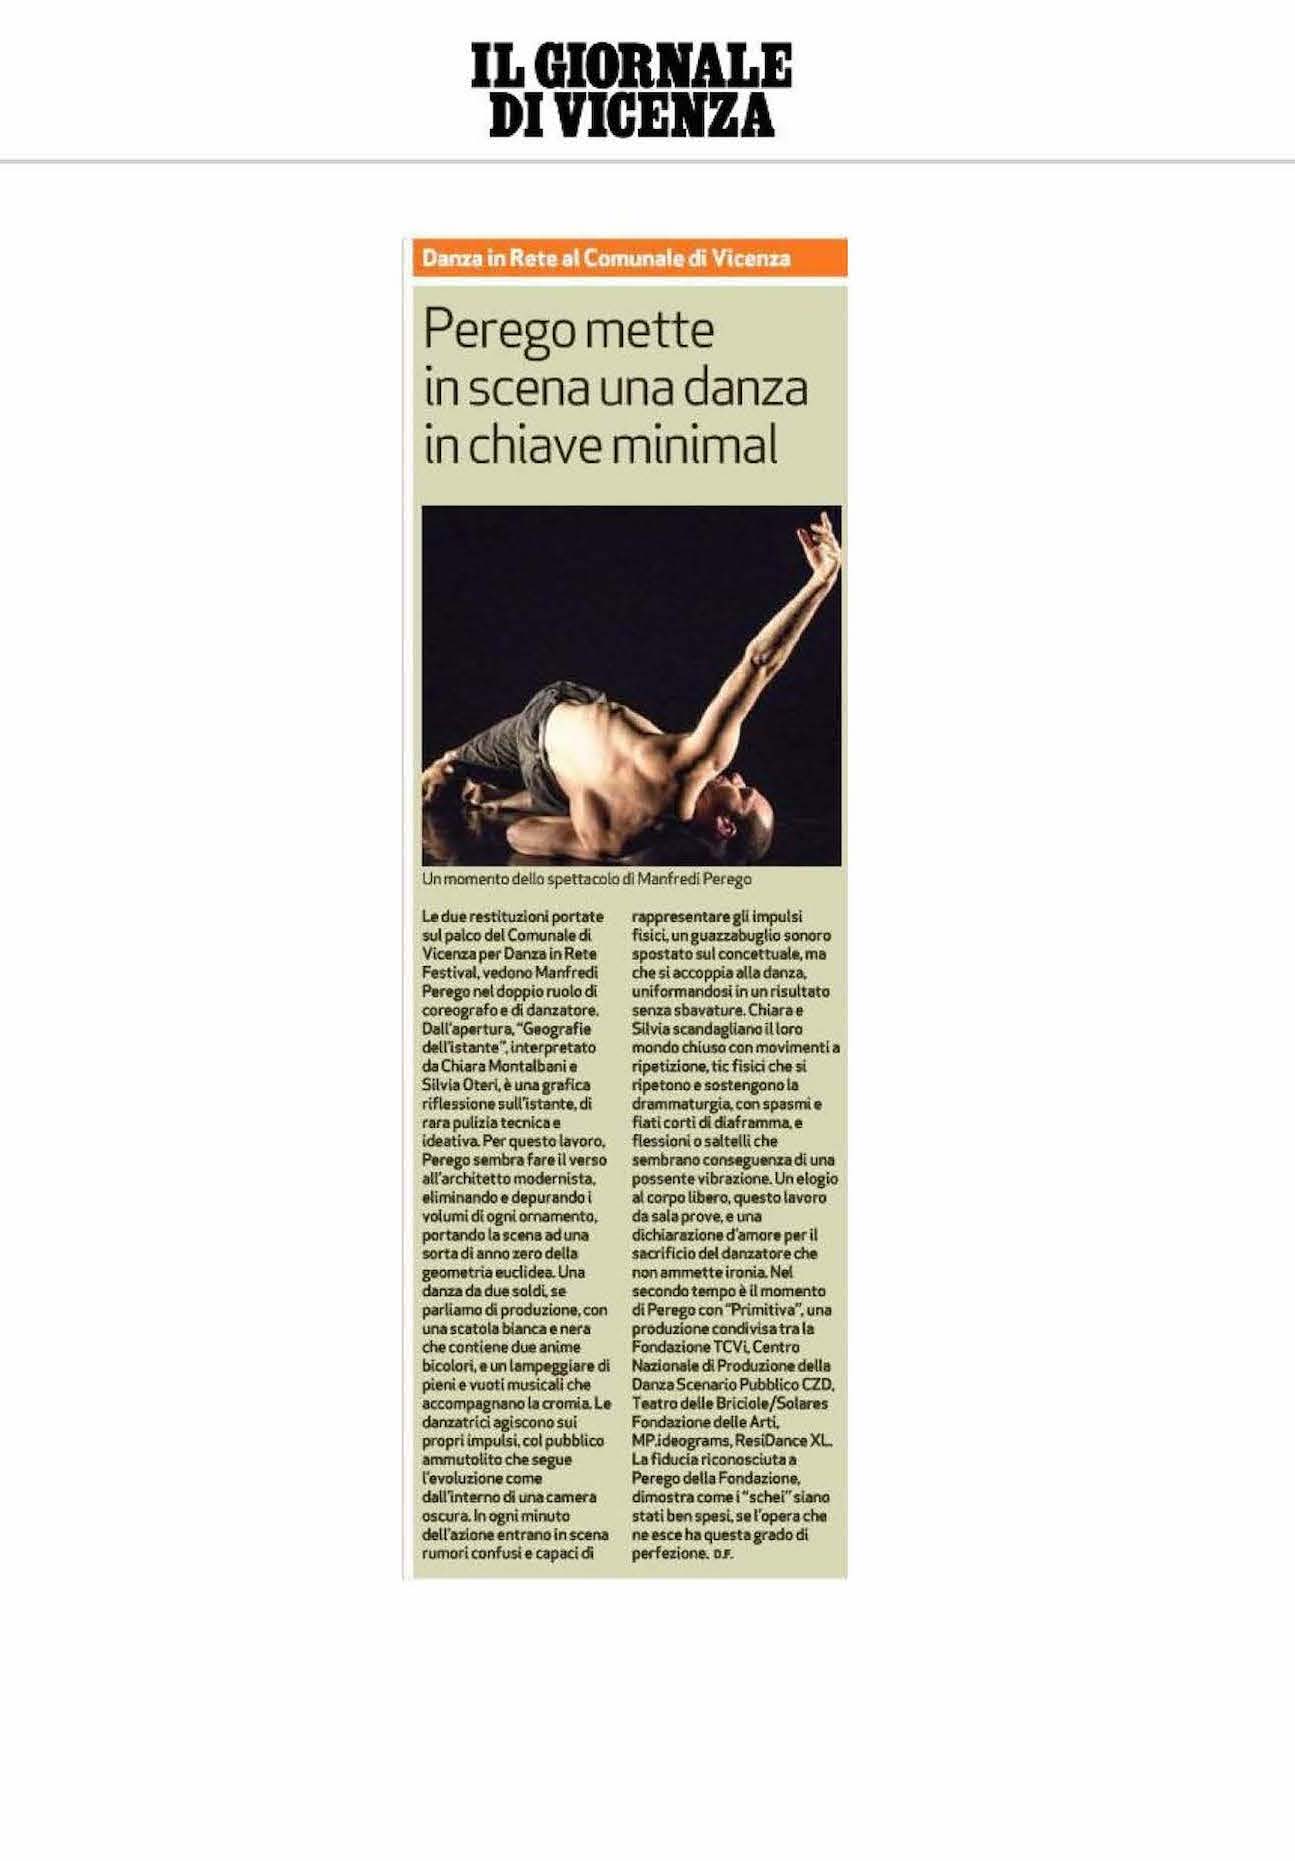 Recensione Primitiva / Geografie dell'istante / Manfredi Perego / Il Giornale di Vicenza, 25 aprile 2018